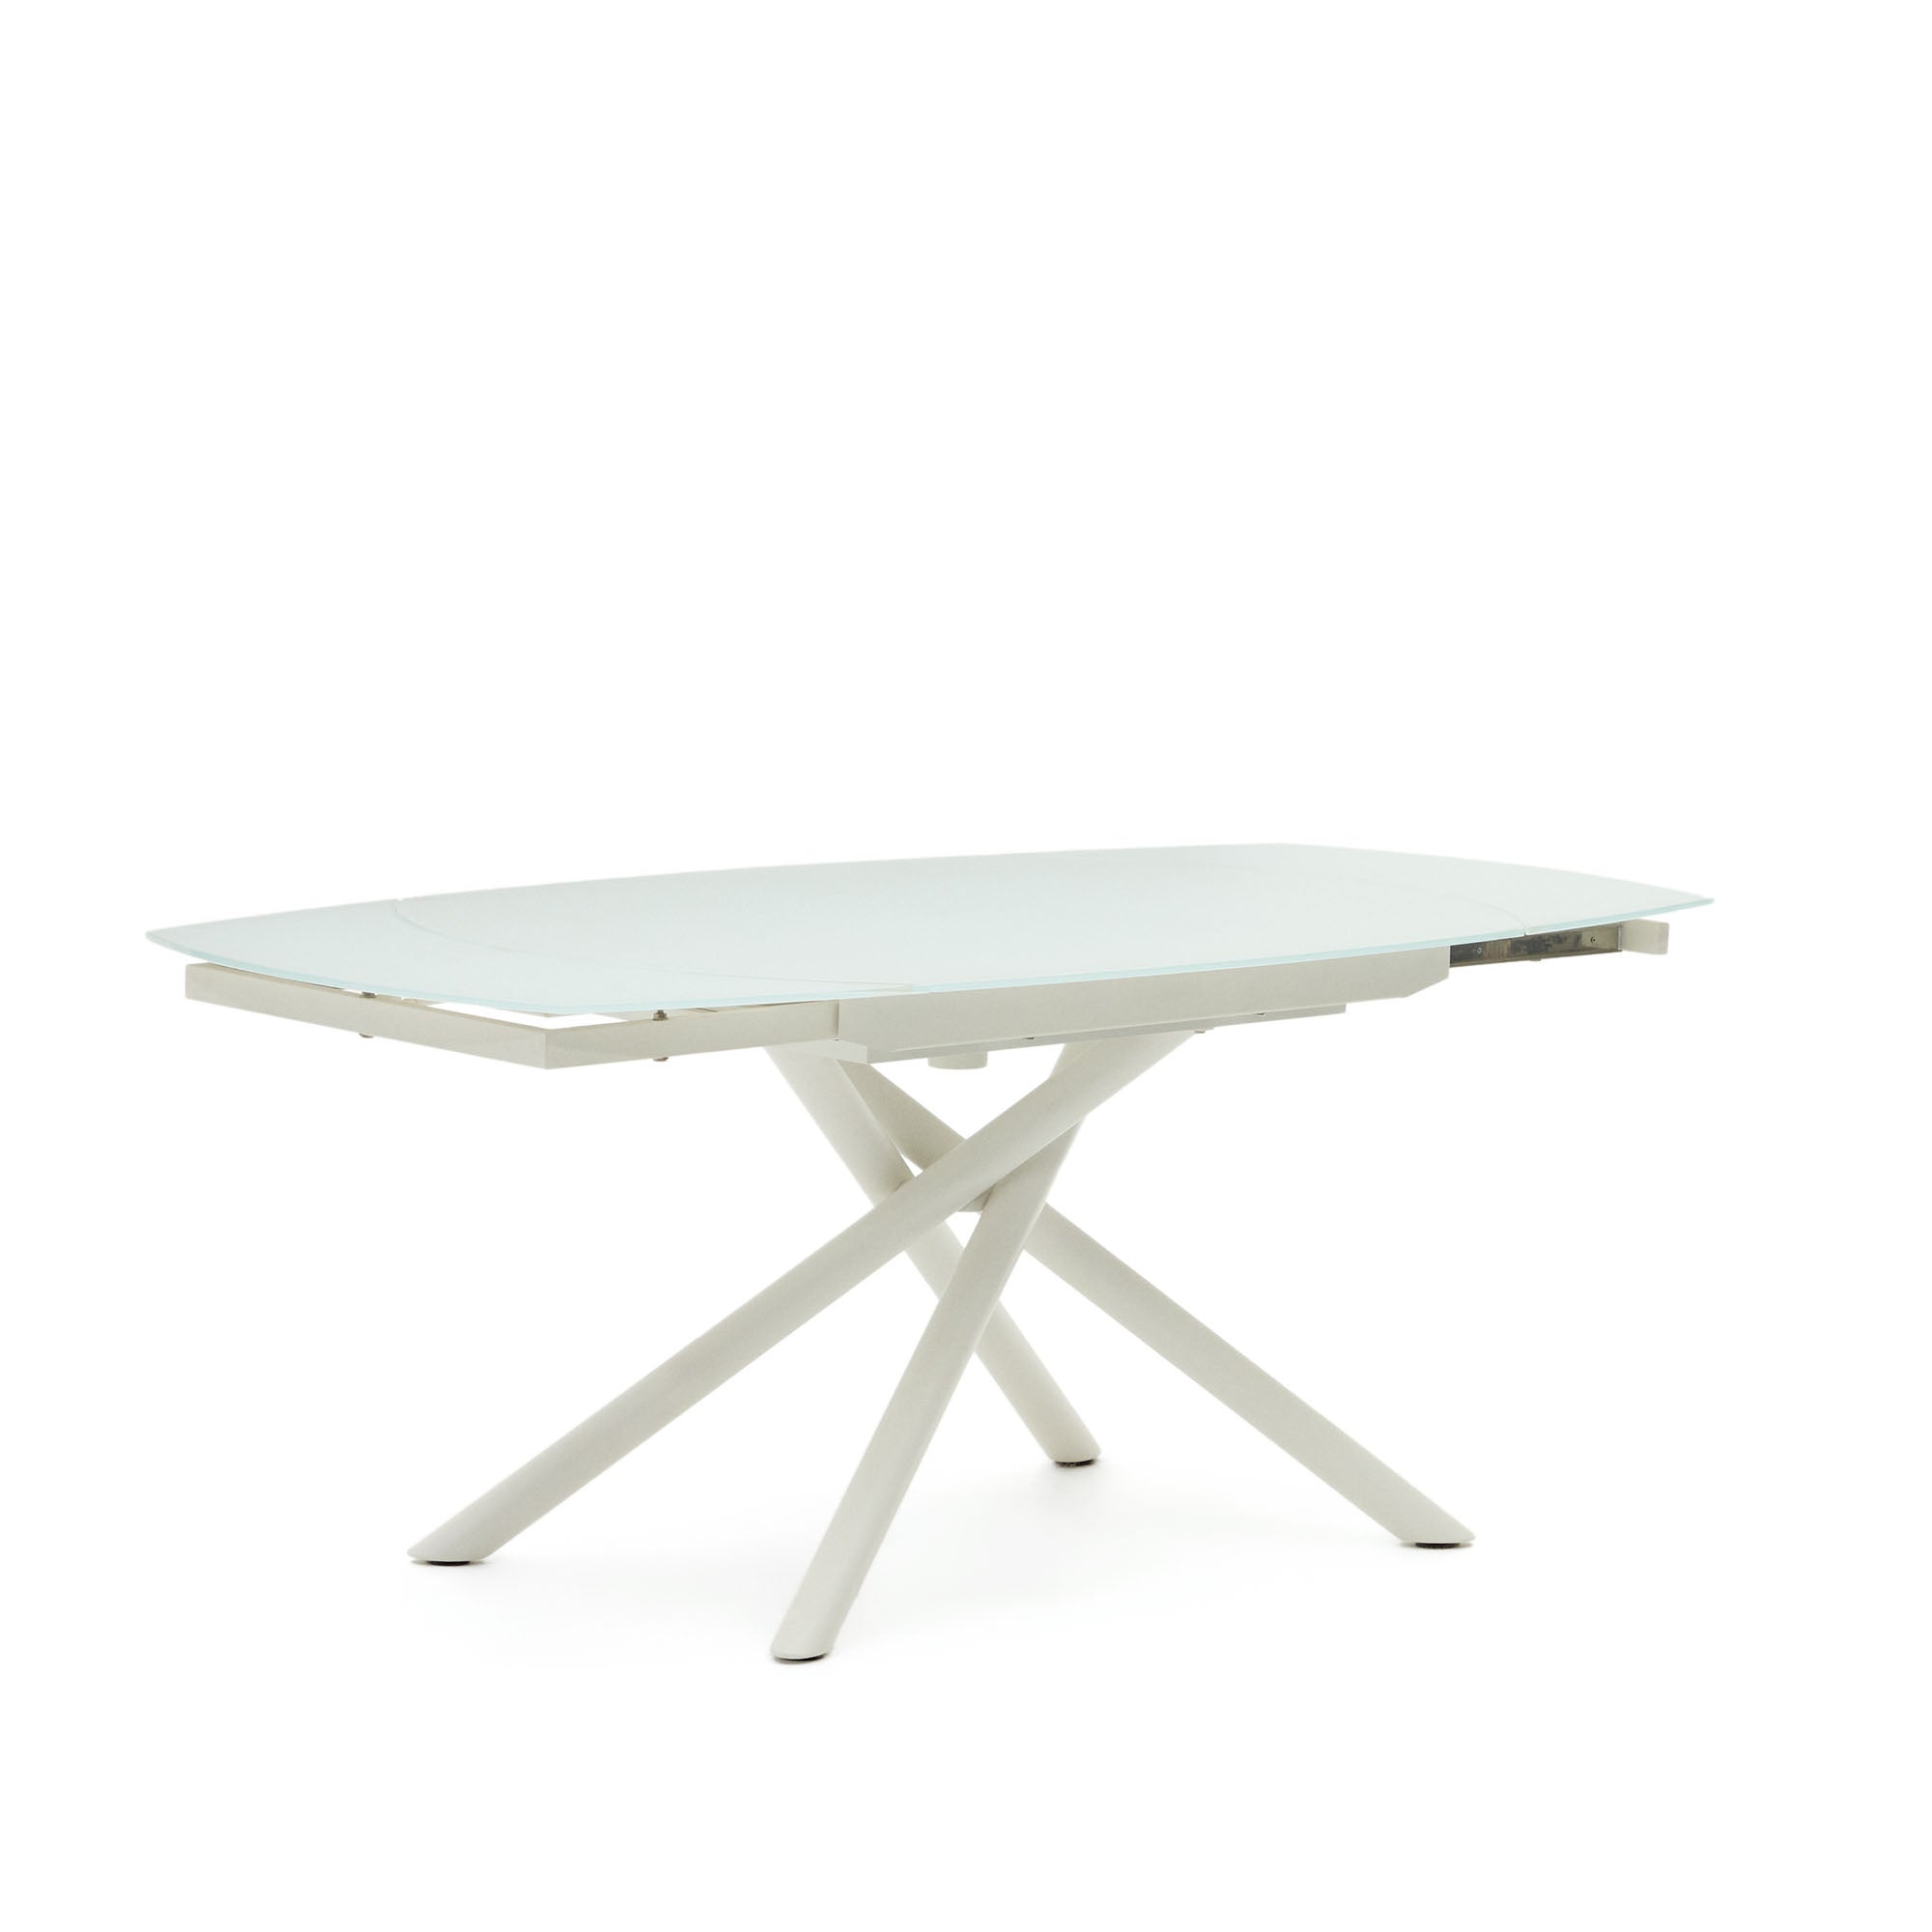 Vashti kihúzható kerek asztal üvegből és MDF-ből, acél lábakkal, fehér színben, 130(190) x 100 cm